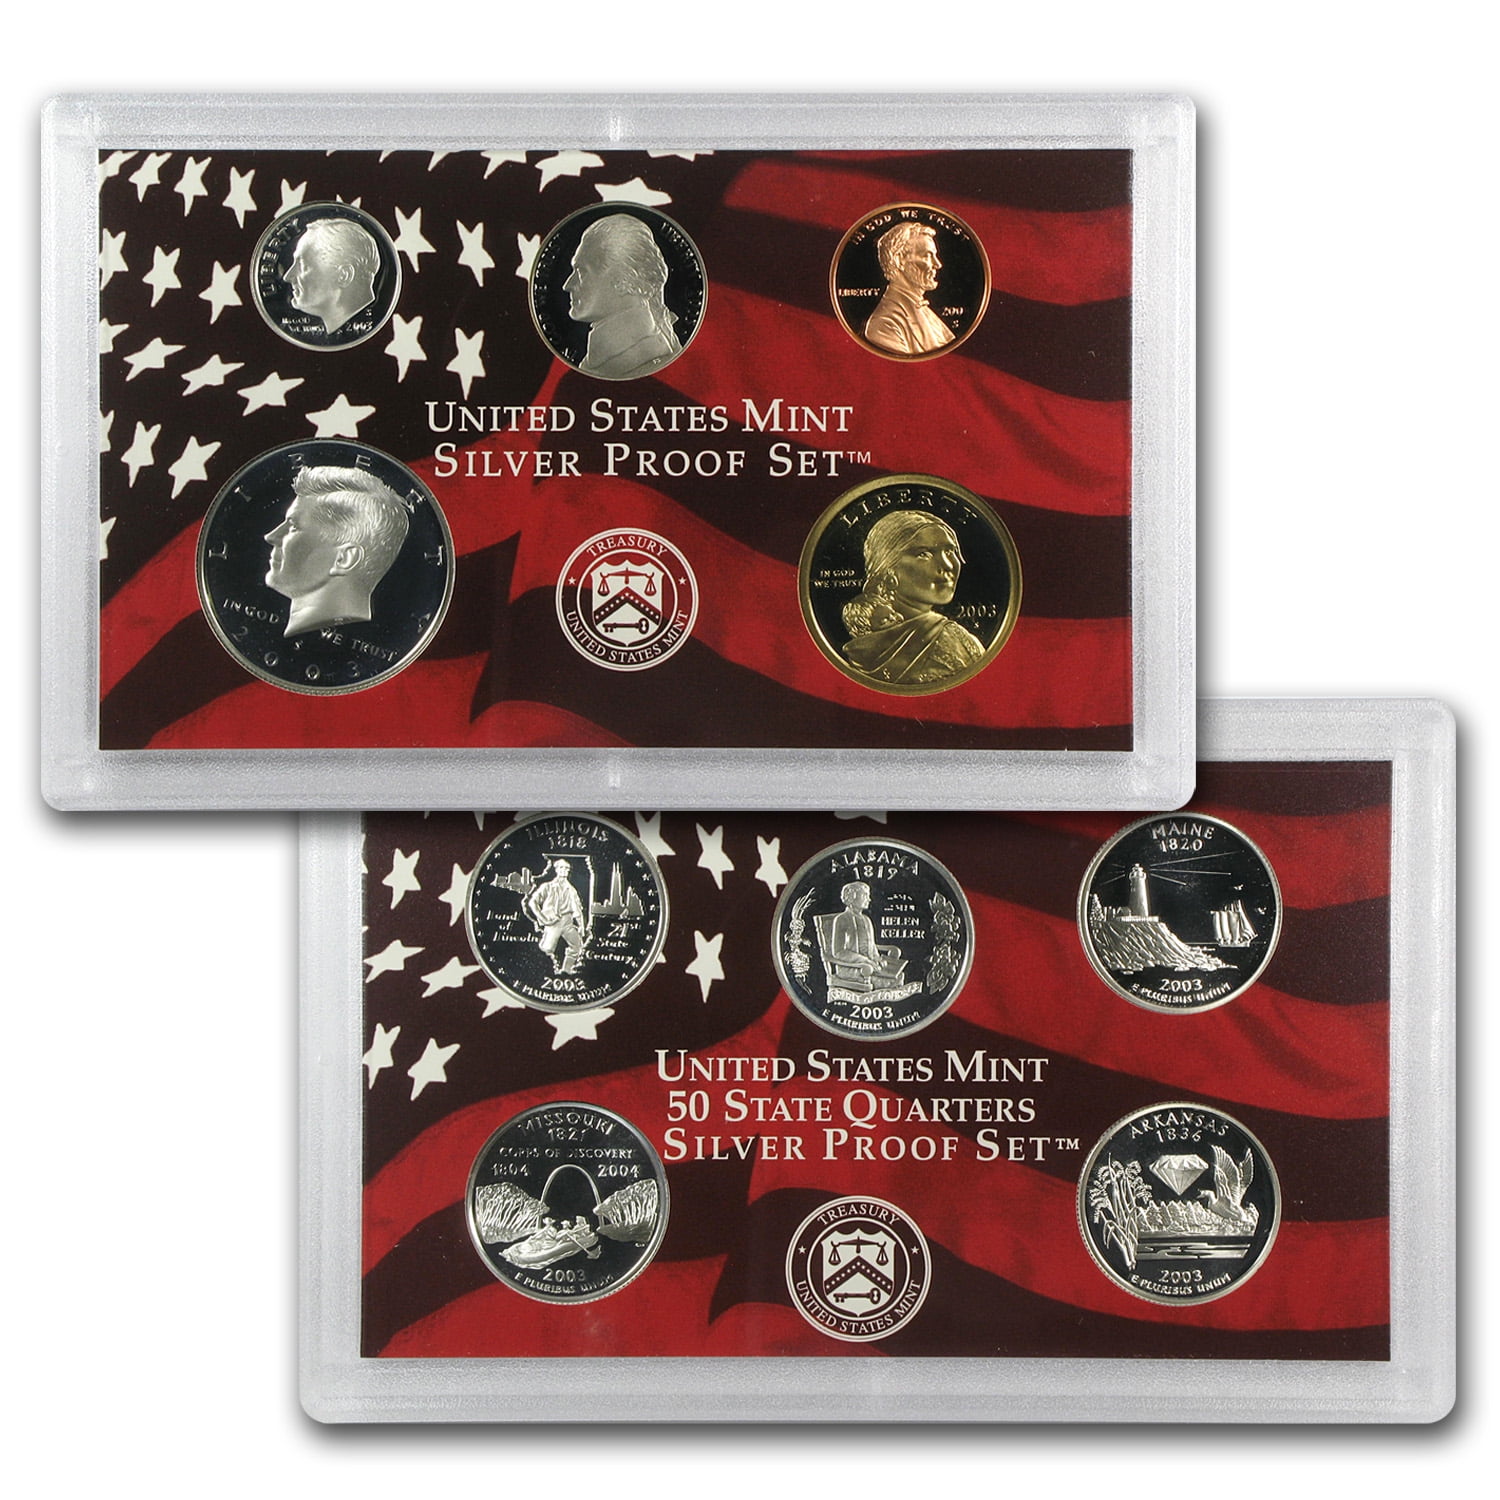 p1-5 Details about   1998 United States Mint Premier Silver proof set 